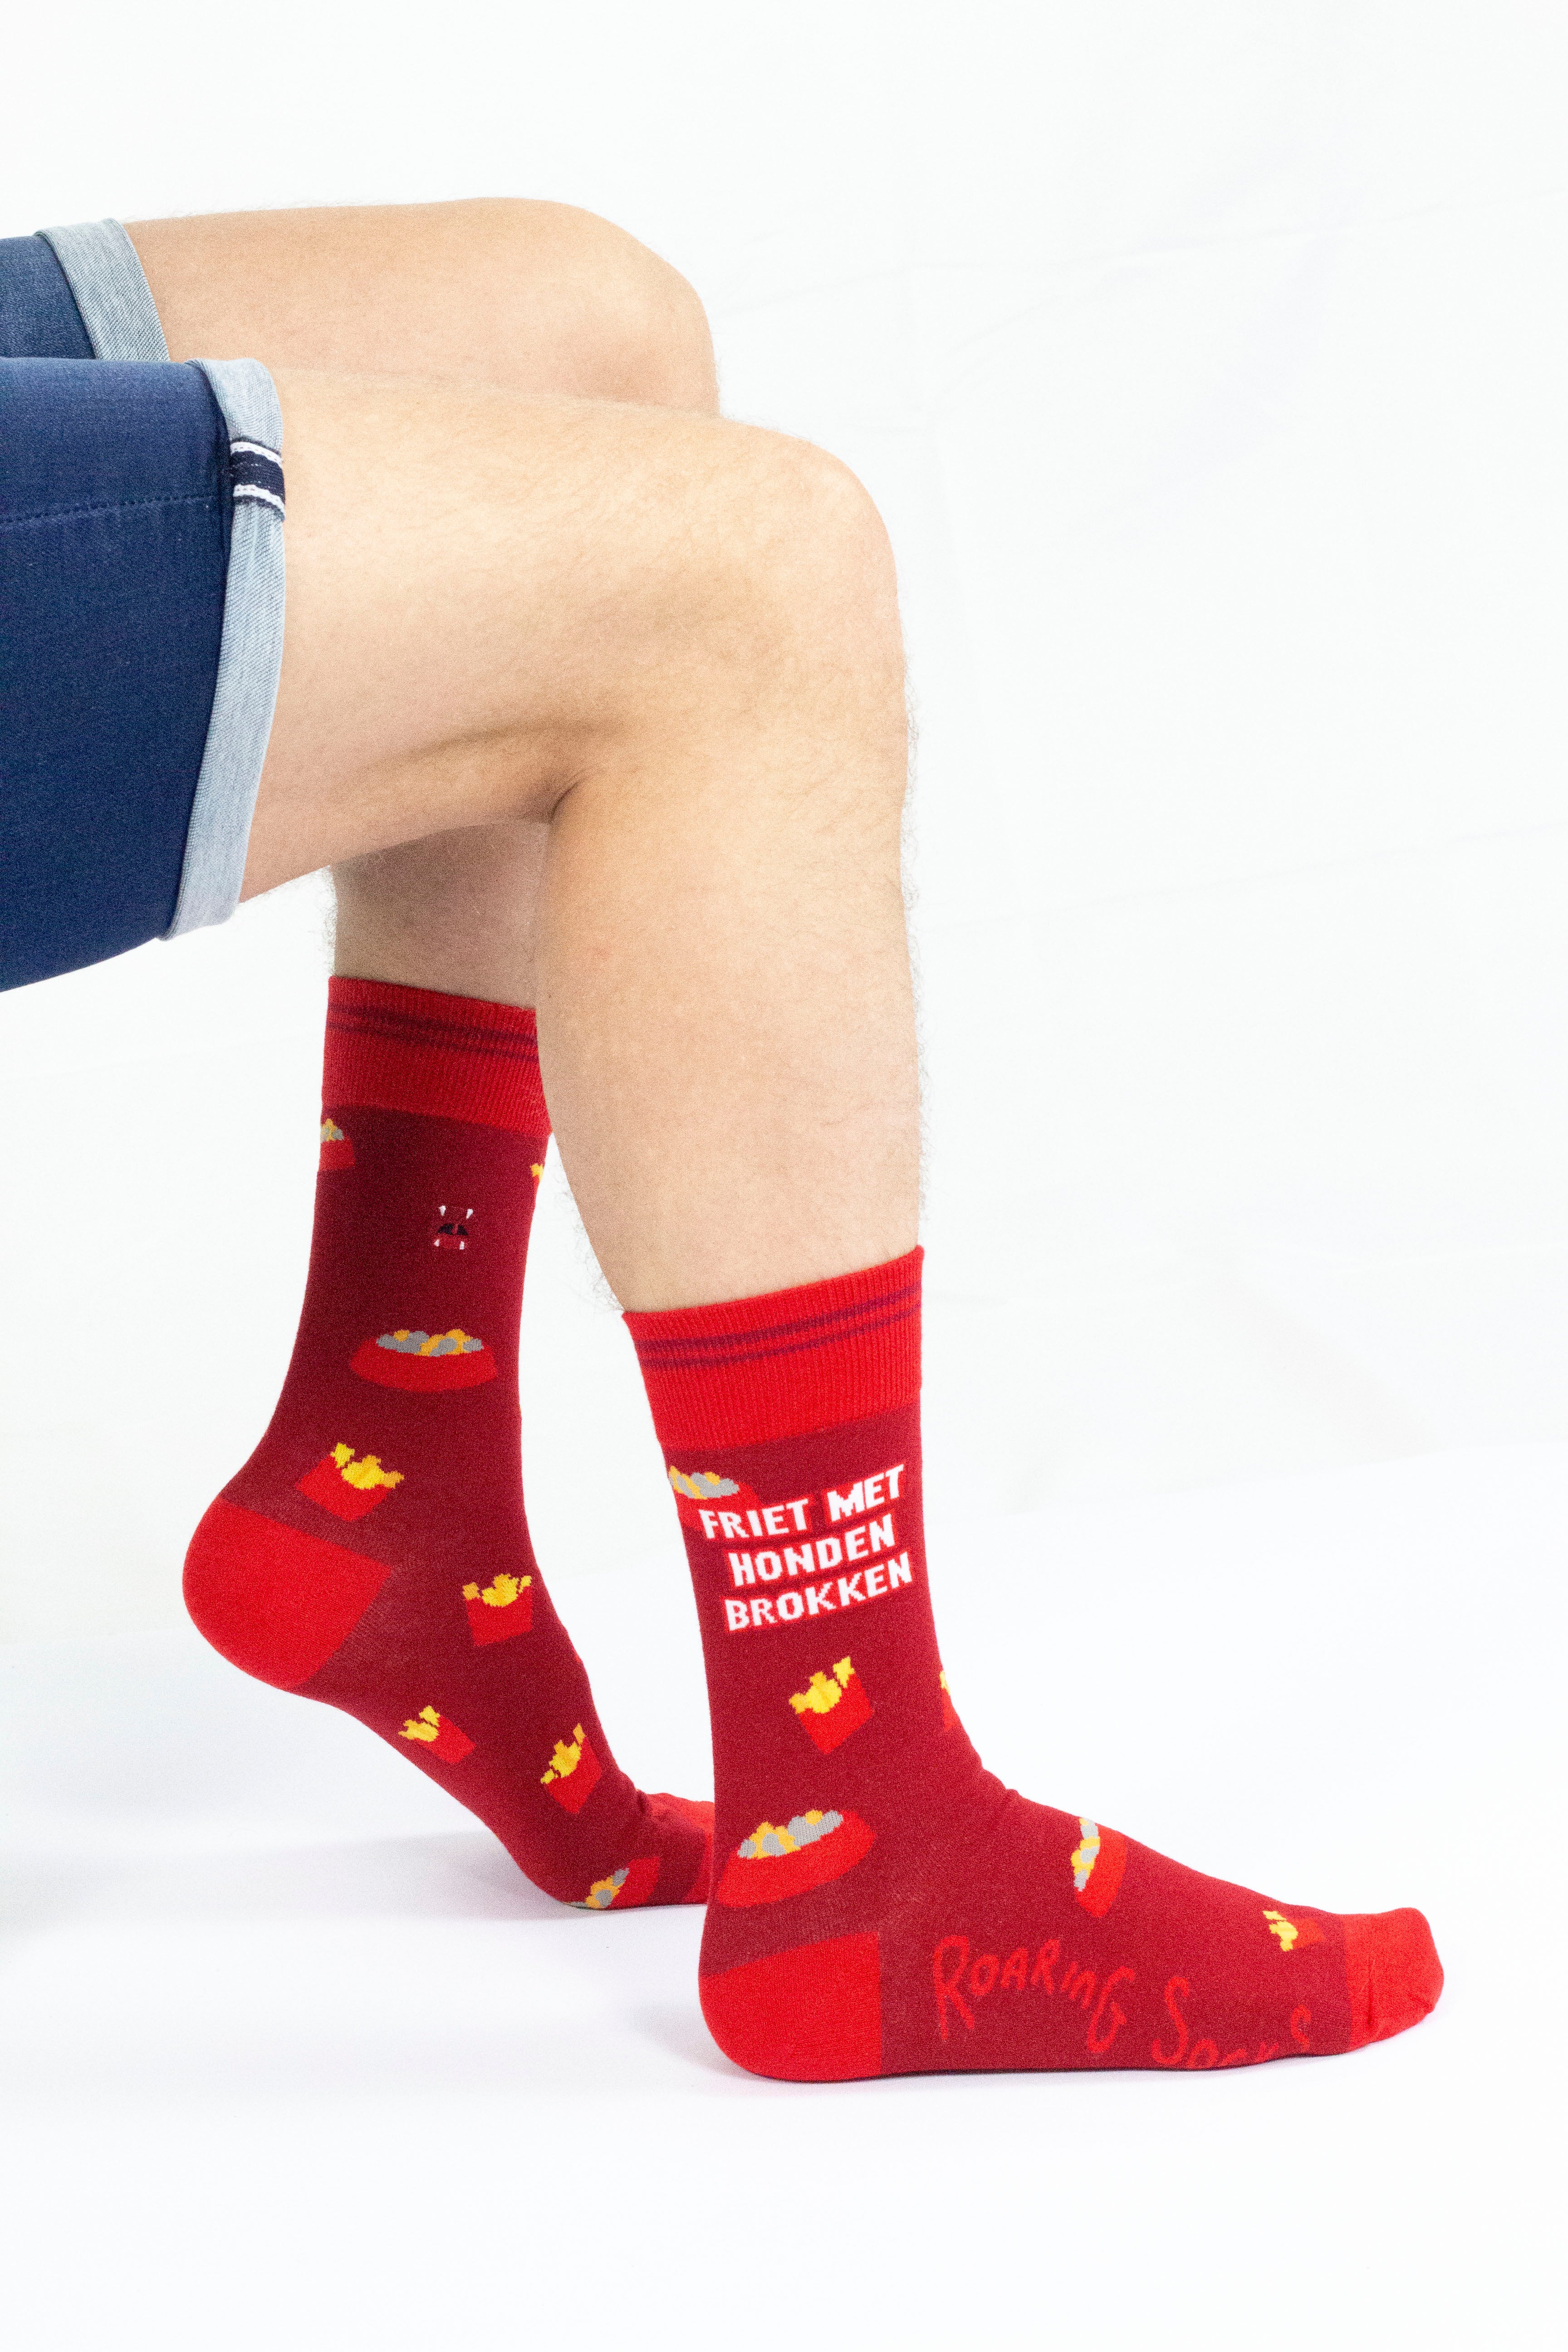 Roaring Socks - Sokken - Friet met Honden brokken - Rood - Katoen - Leuk - Grappig - Vrolijk - Fashion - Cadeau